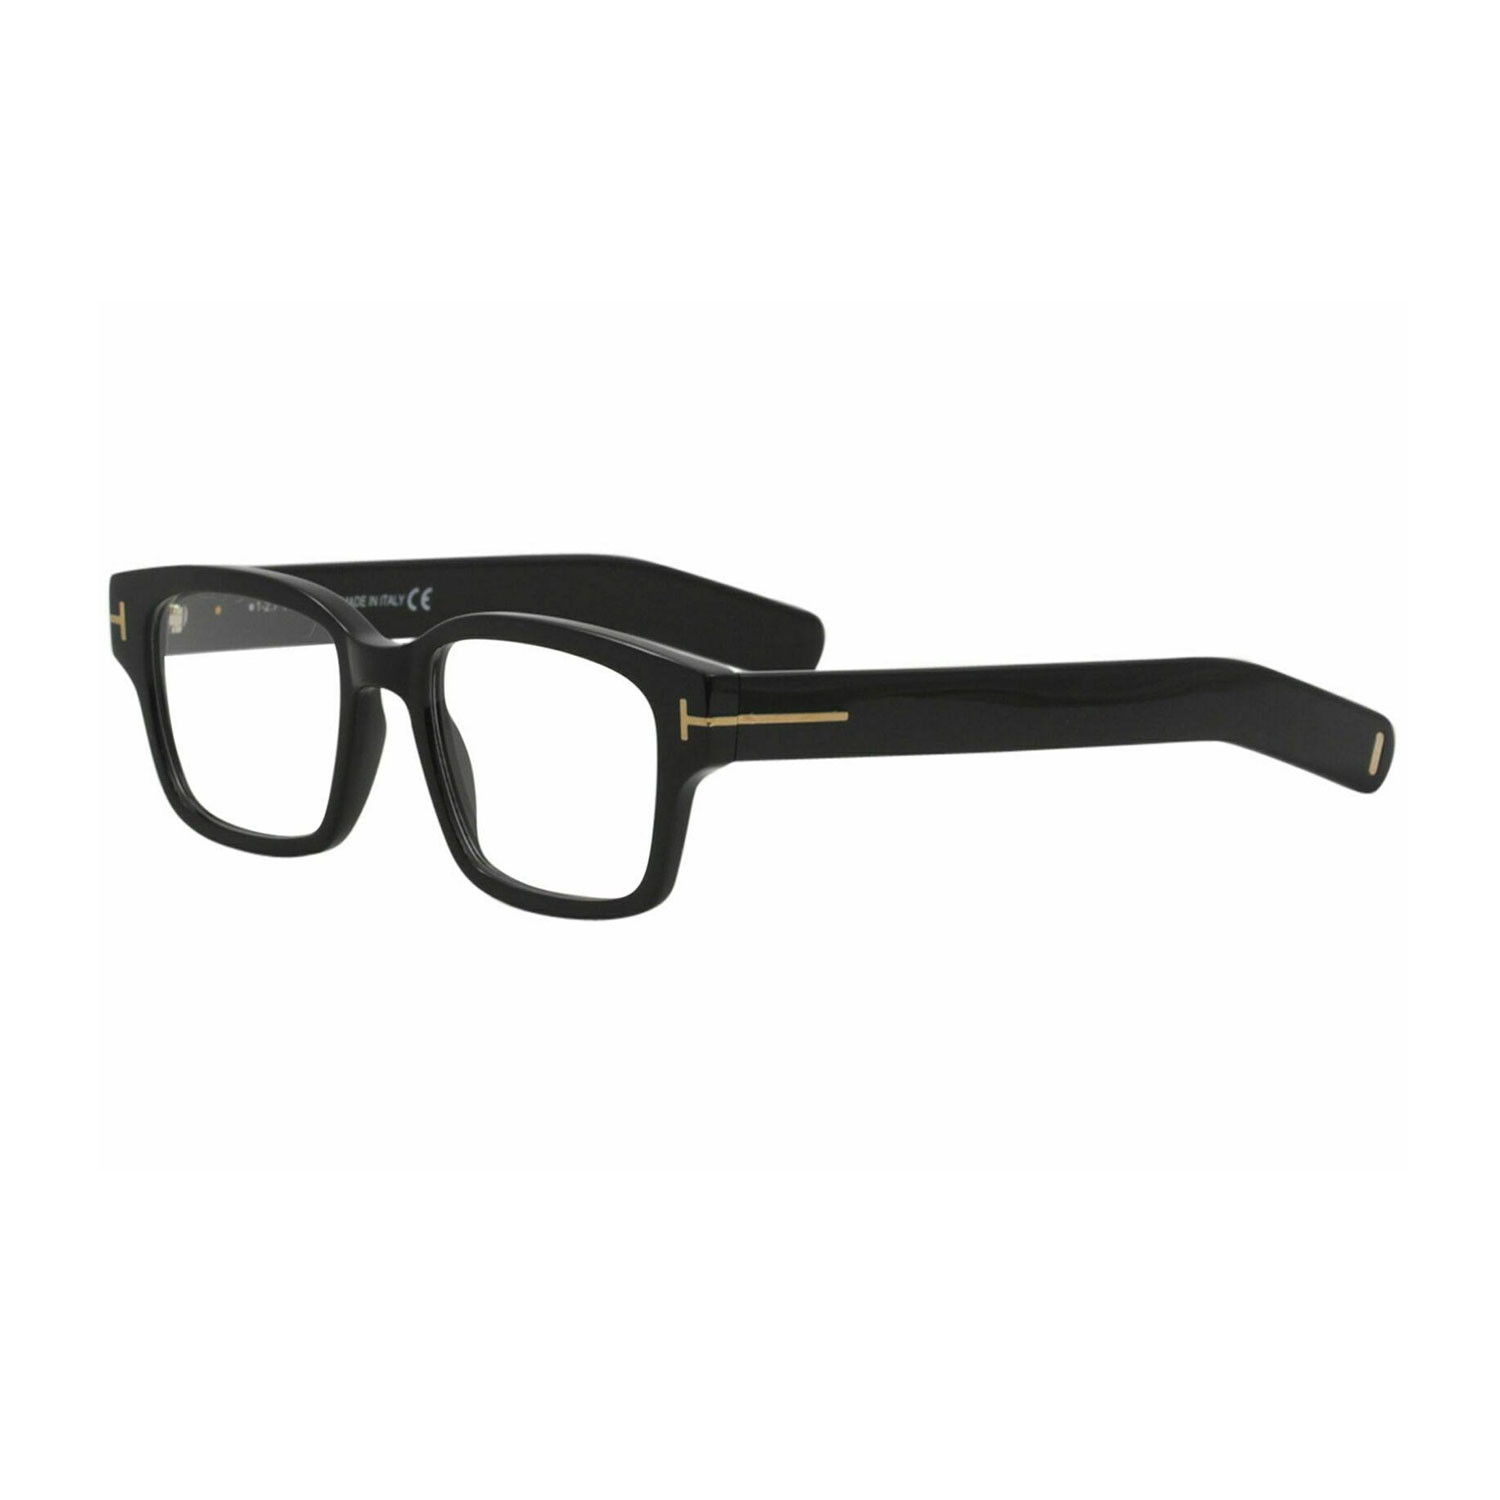 Unisex Rectangular Optical Frames Black Tom Ford Touch Of Modern 